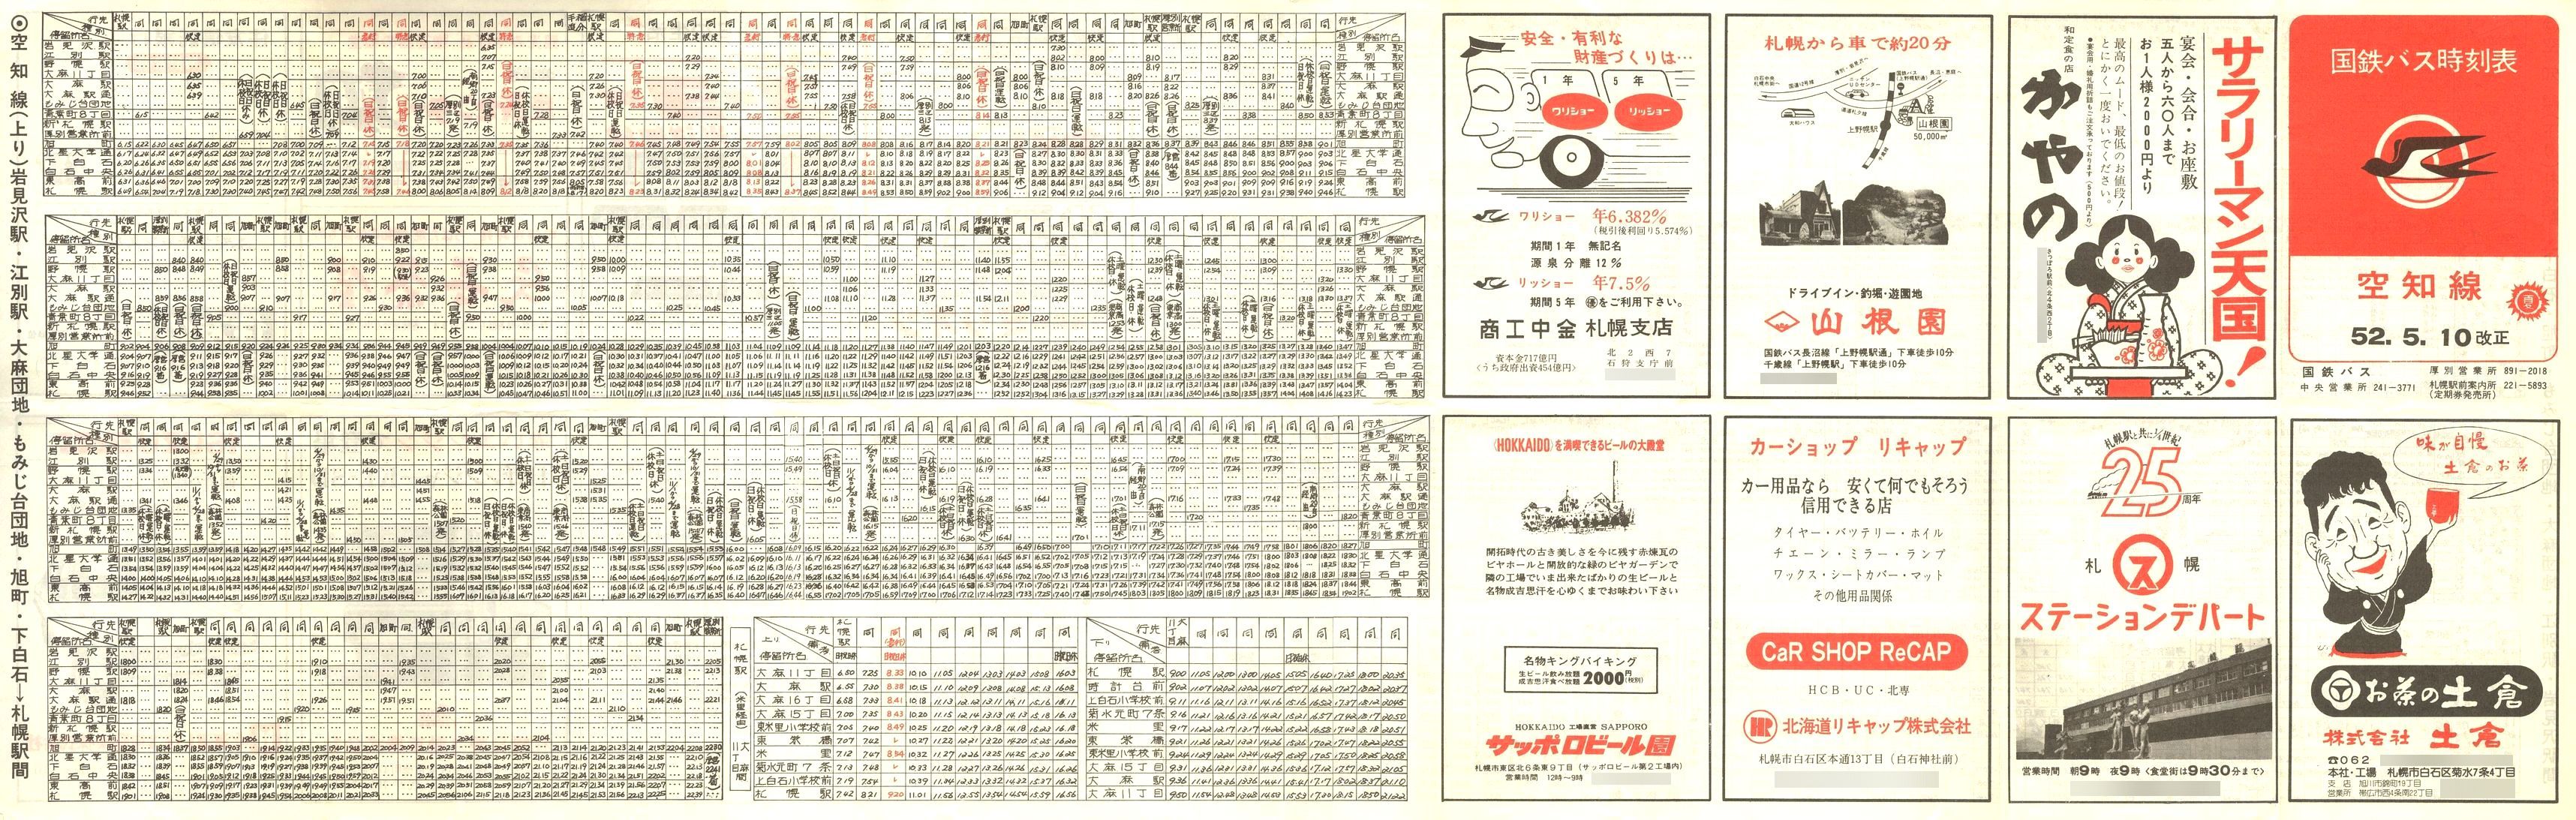 1977-05-10改正_国鉄バス_空知線時刻表表面